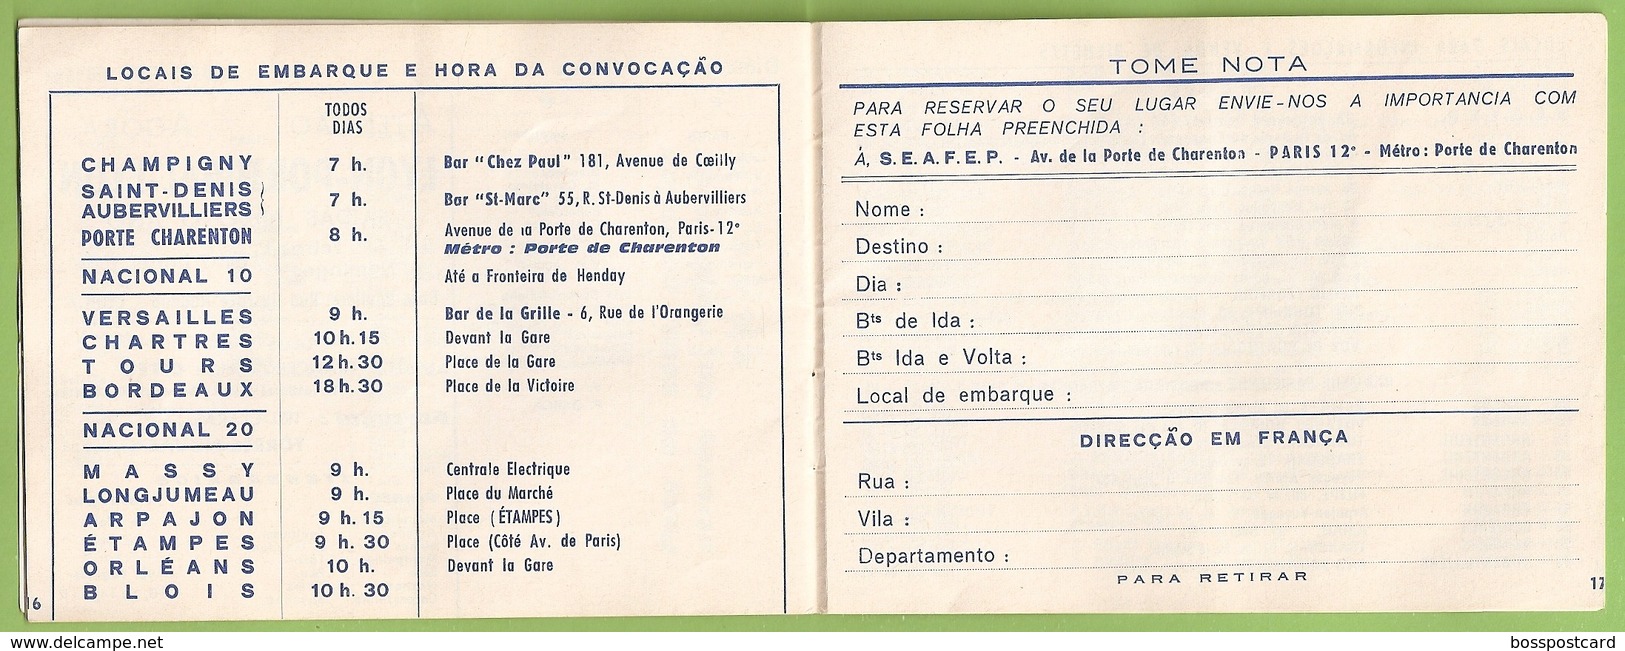 Torres Novas - Braga - Aveiro - Viseu - Faro - Lagos - Guarda - Leiria - Santarém - Horário - Autocarro - Bus - Claras